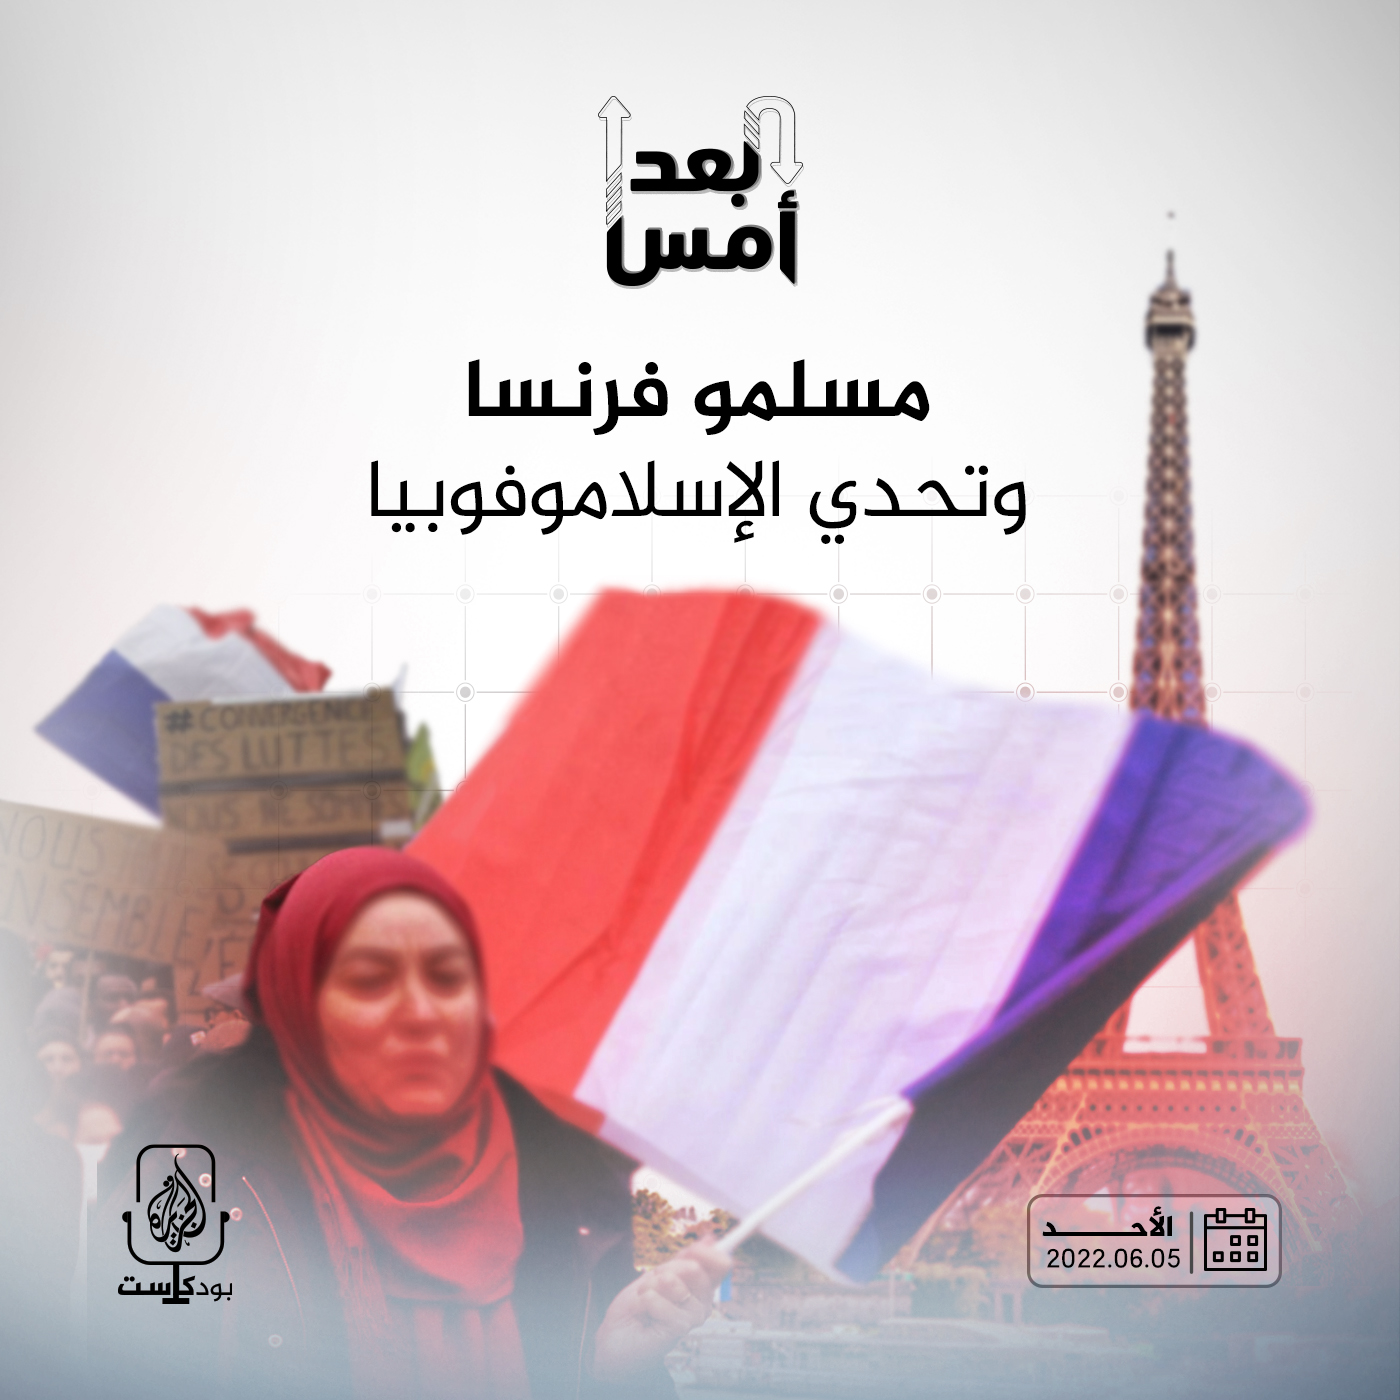 مسلمو فرنسا وتحدي الإسلاموفوبيا